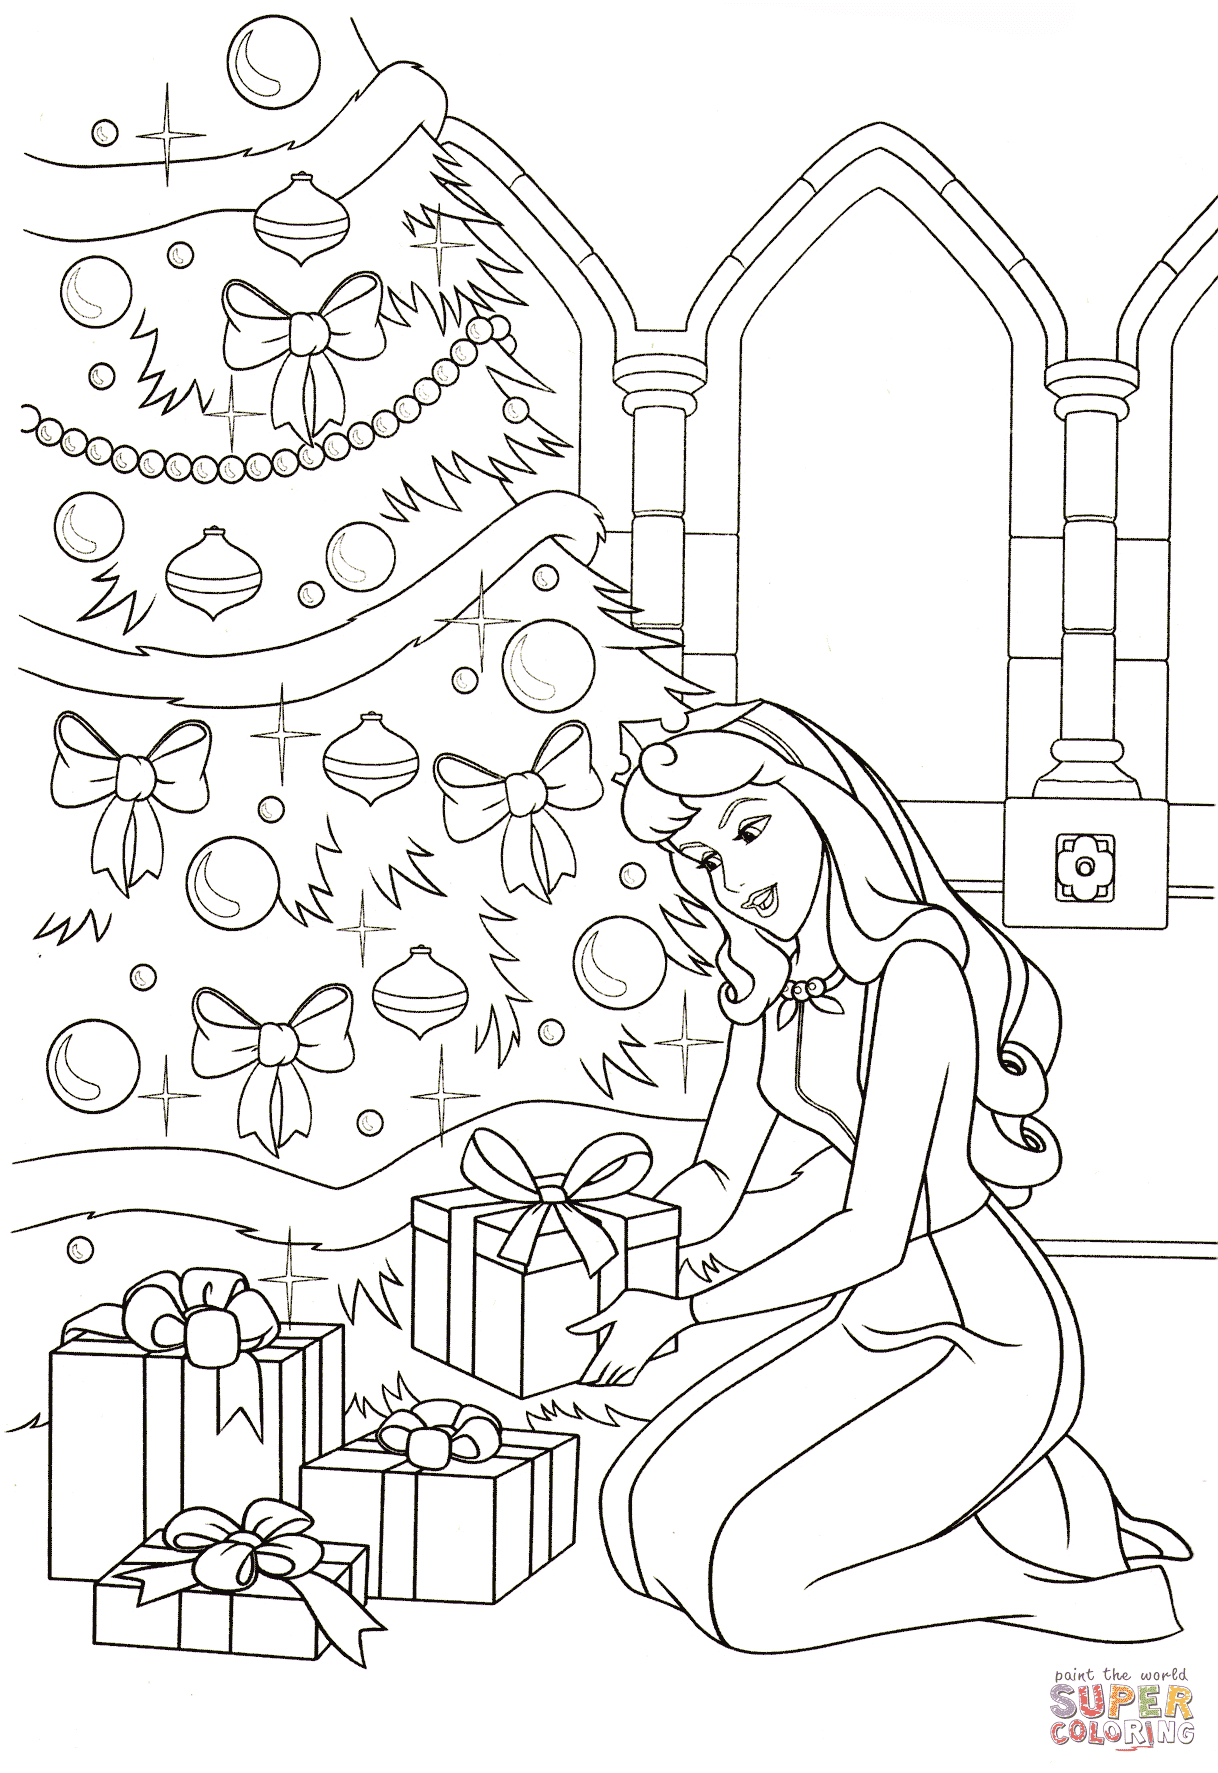 Aurora coloca todos os presentes debaixo da árvore da Bela Adormecida